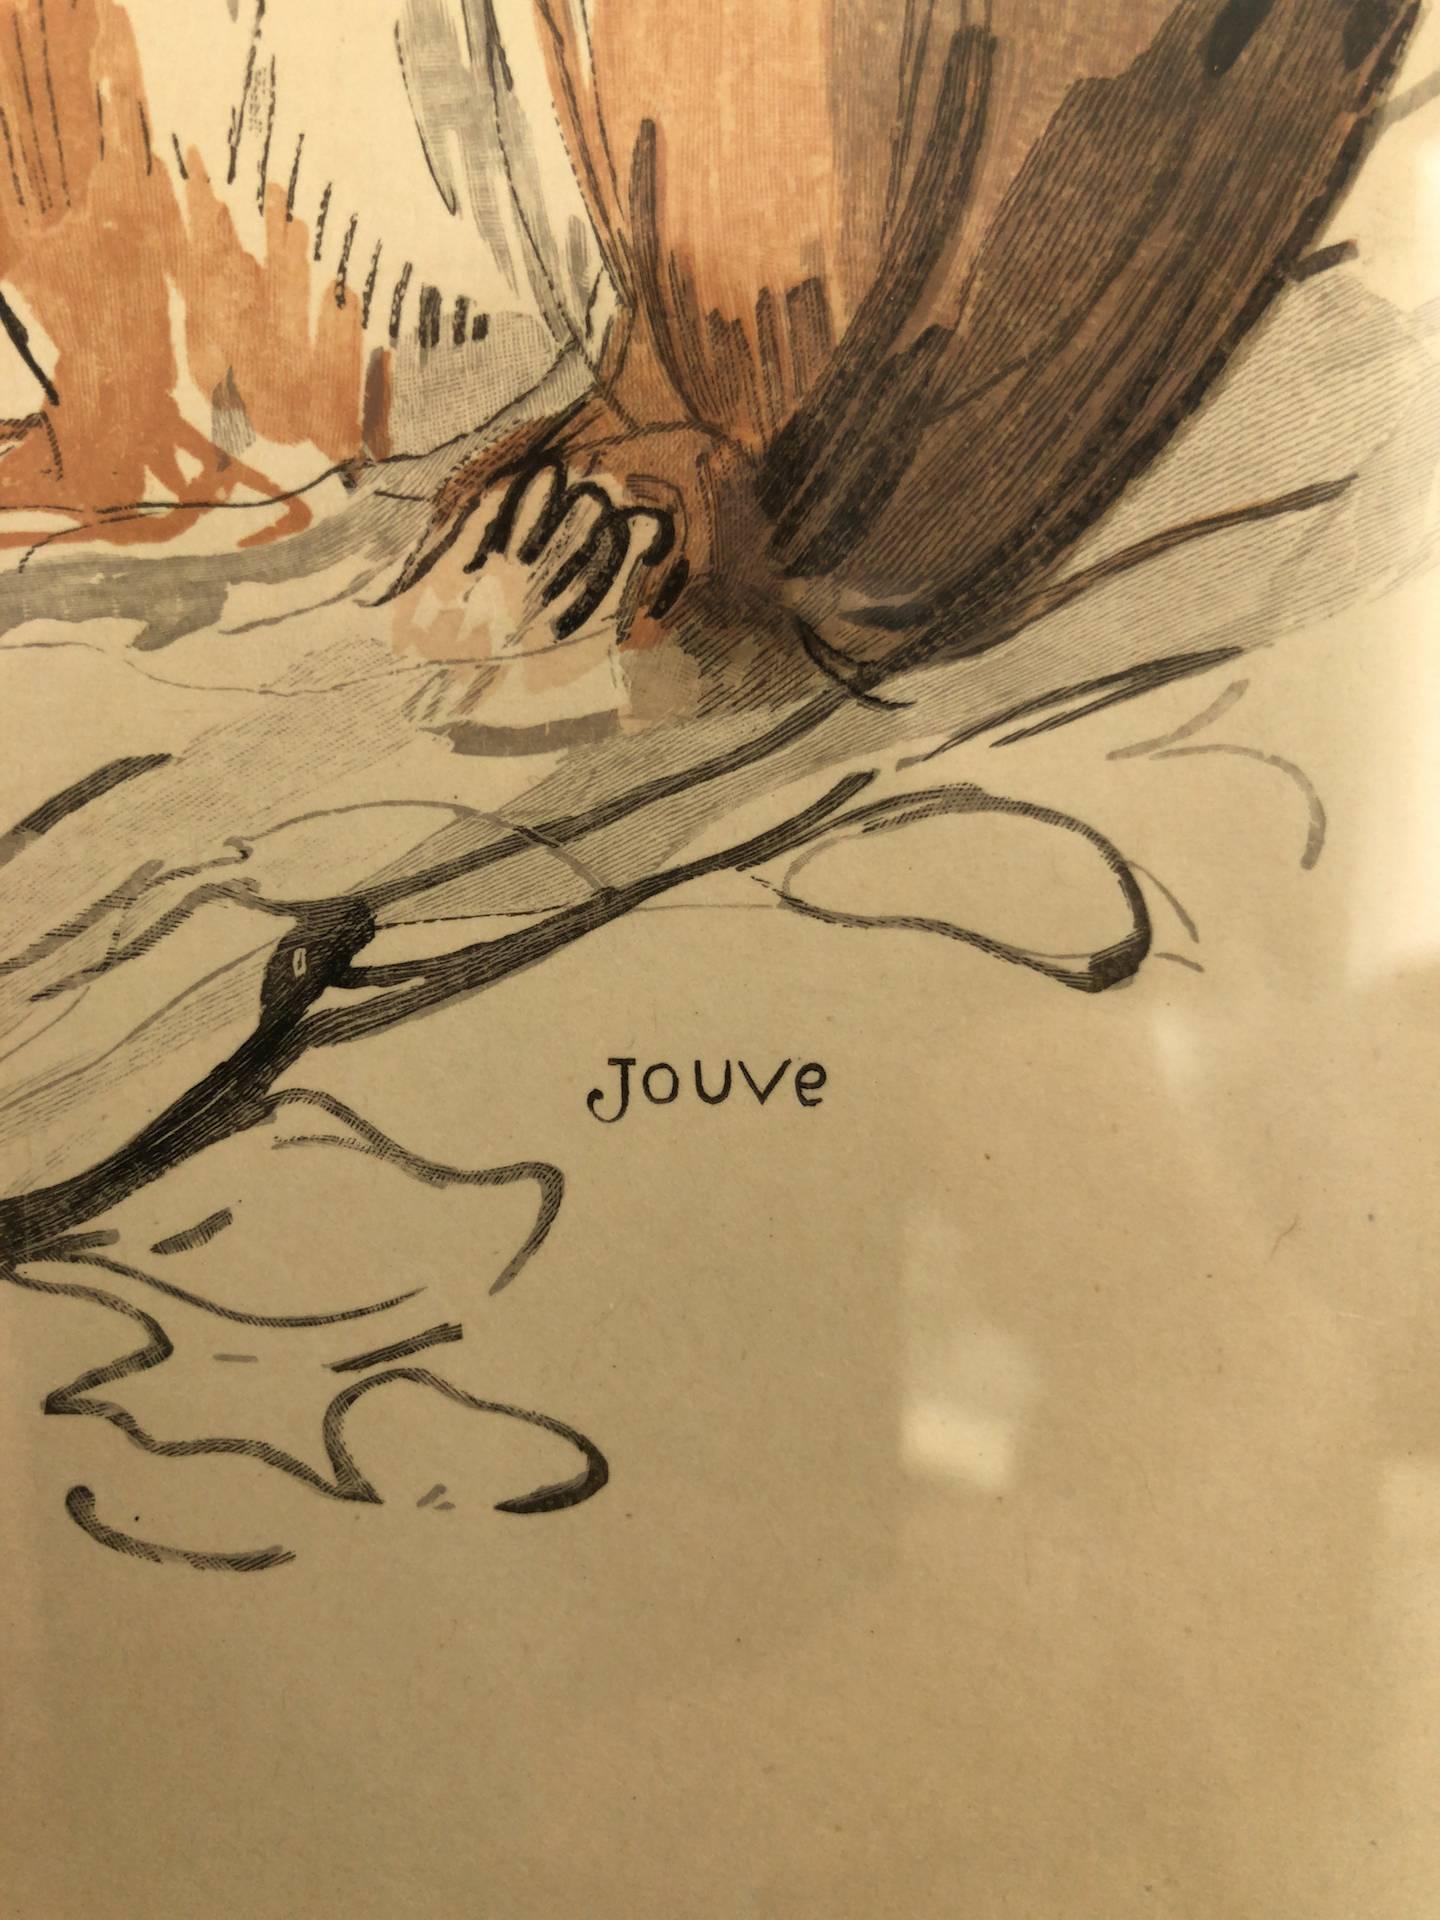 French L’écureuil, Squirrel, Lithograph by Paul Jouve, France 1932